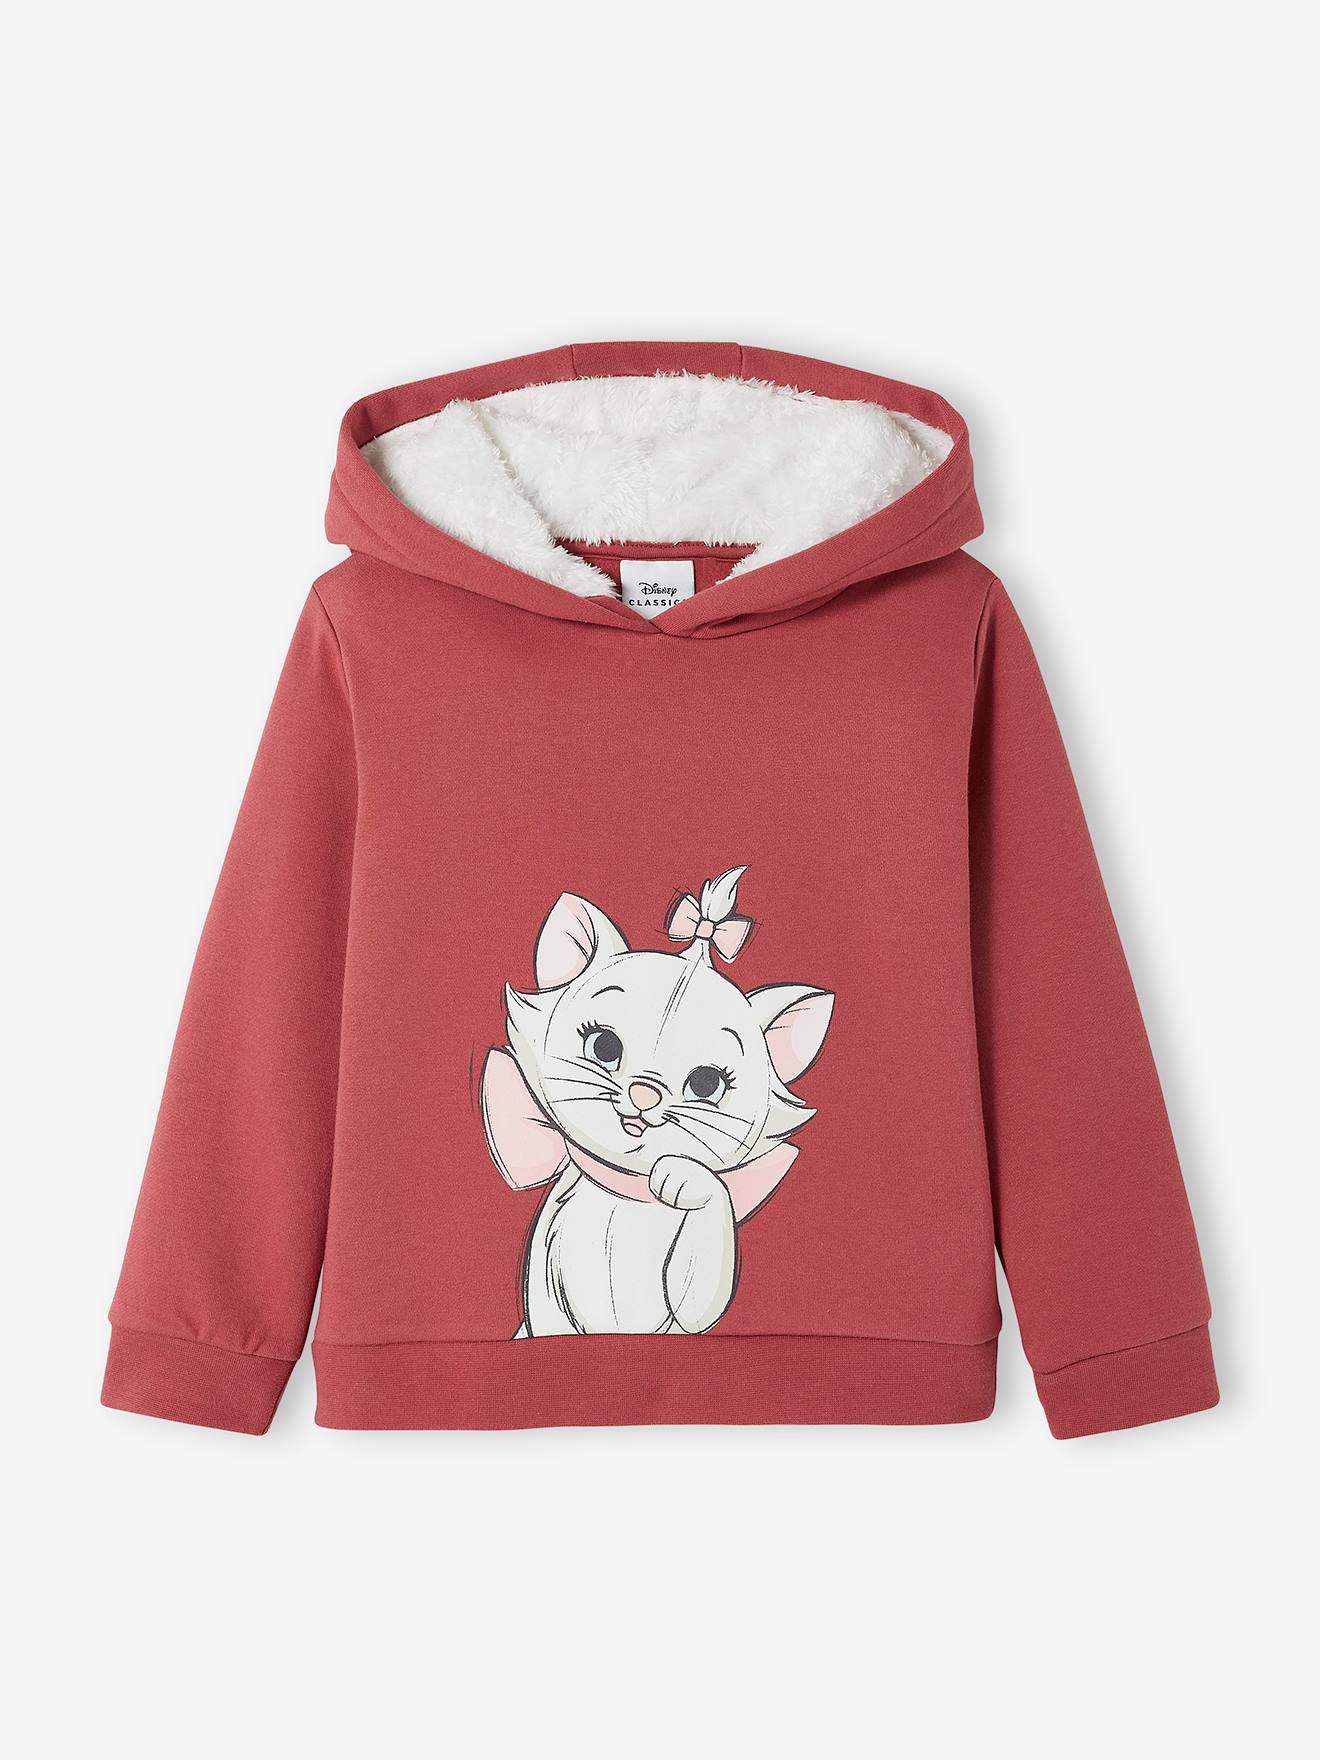 Visiter la boutique DisneyDisney Aristocats Pyjama à capuche pour femme Motif chat Marie 